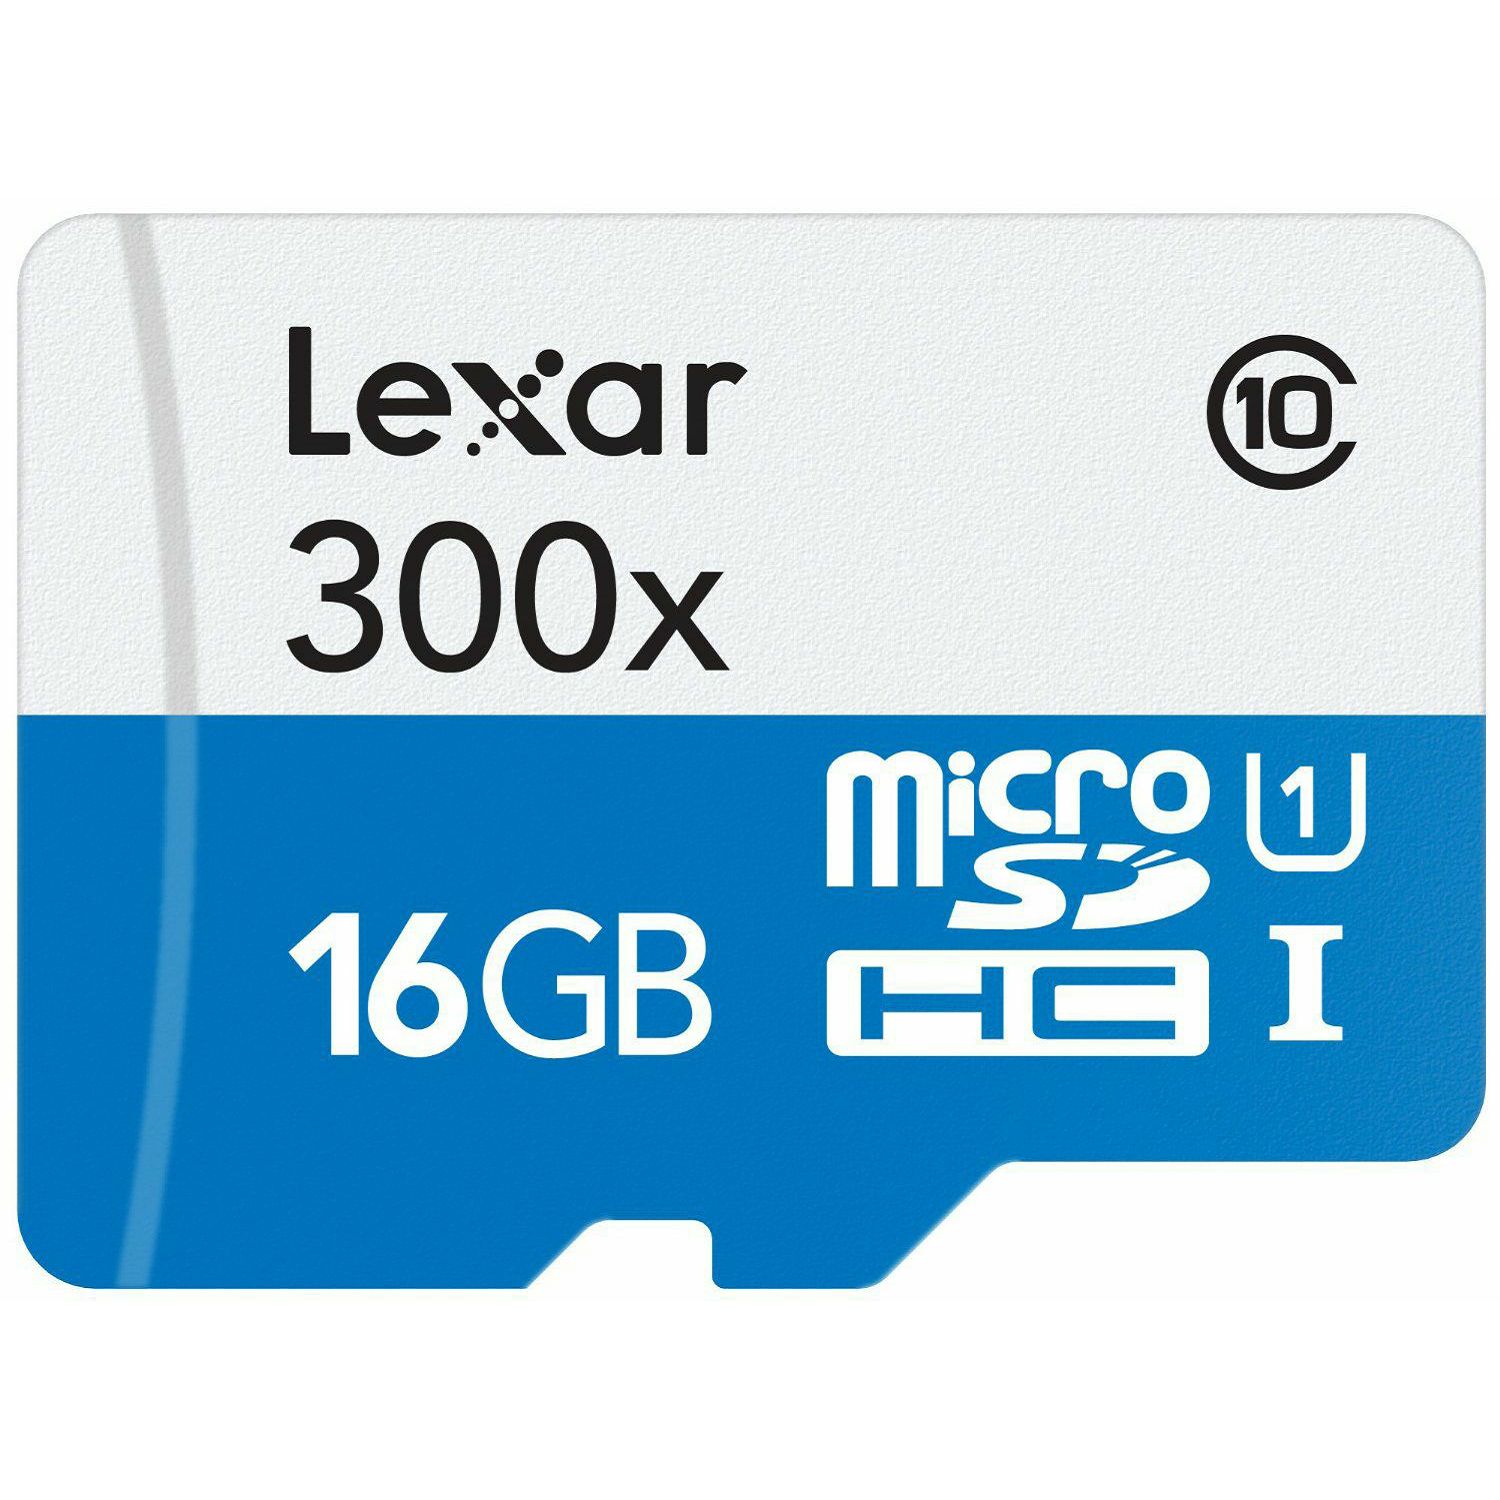 Lexar microSDHC 16GB 300x 45MB/s Class 10 High Speed memorijska kartica sa adapterom LSDMI16GBBEU300